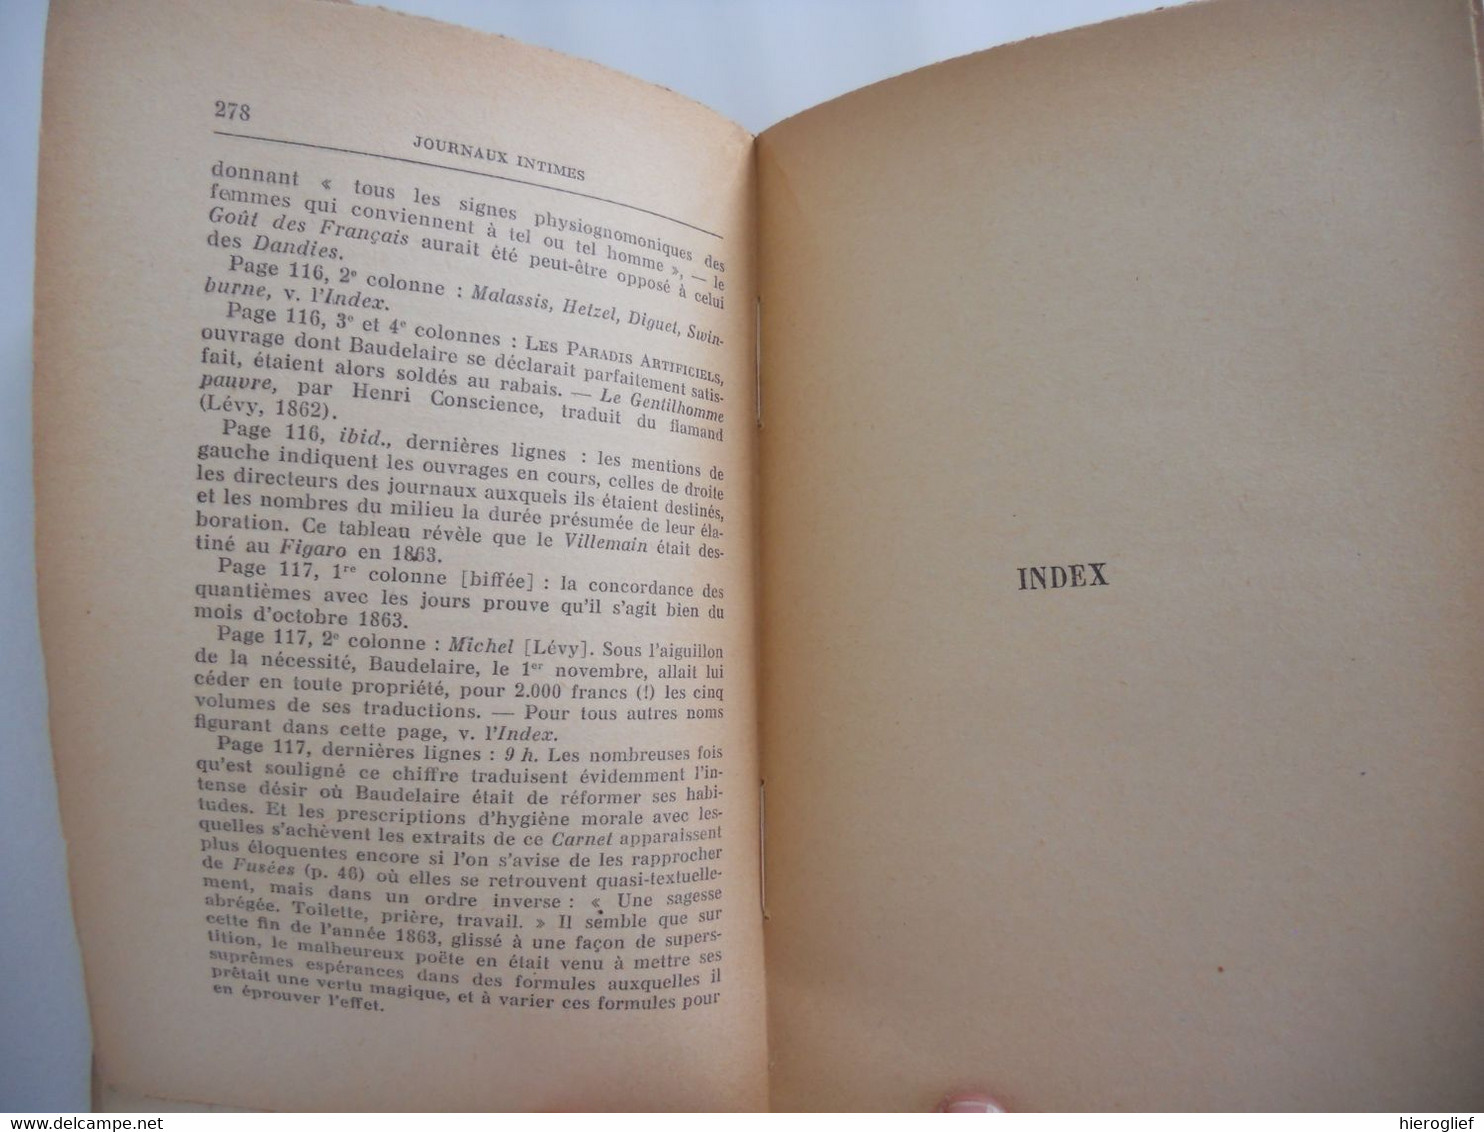 JOURNAUX INTIMES Par Charles Baudelaire 1938 Avertissement Et Notes De Jacques Crepet - Französische Autoren